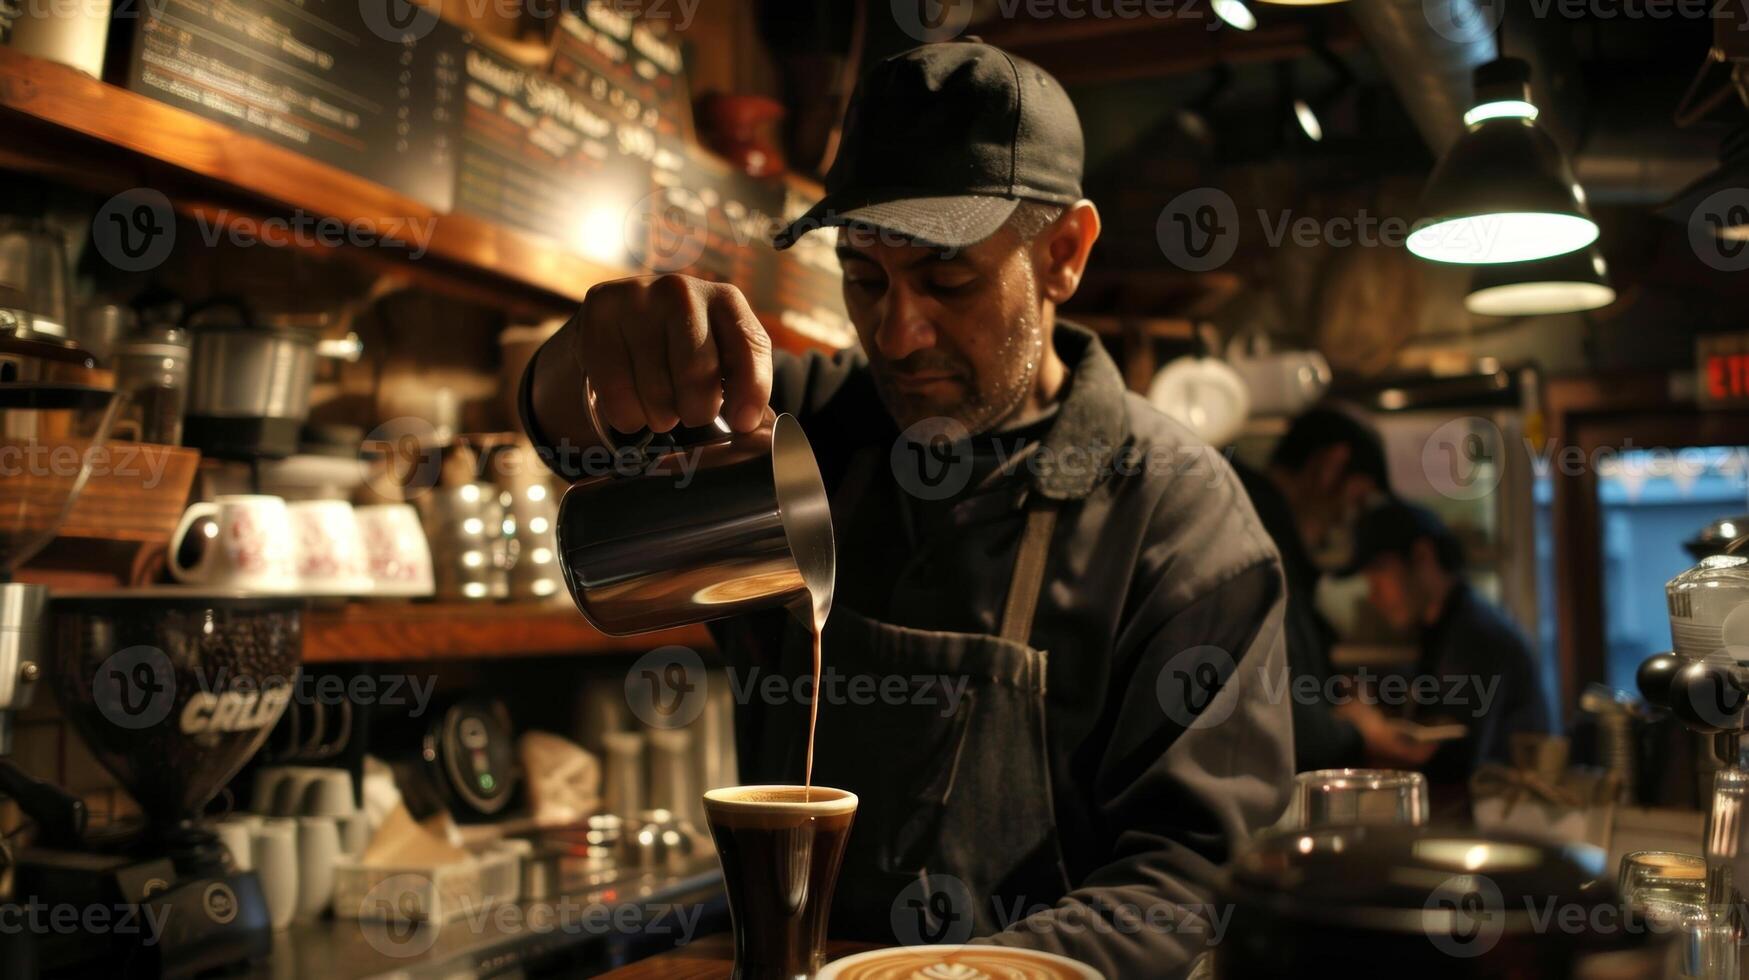 de geur van vers gebrouwen koffie vult de lucht net zo een barista vakkundig giet latte kunst Aan een kop zijn koffie winkel een populair plek voor bezoekers op zoek naar een s avonds laat cafeïne fix foto